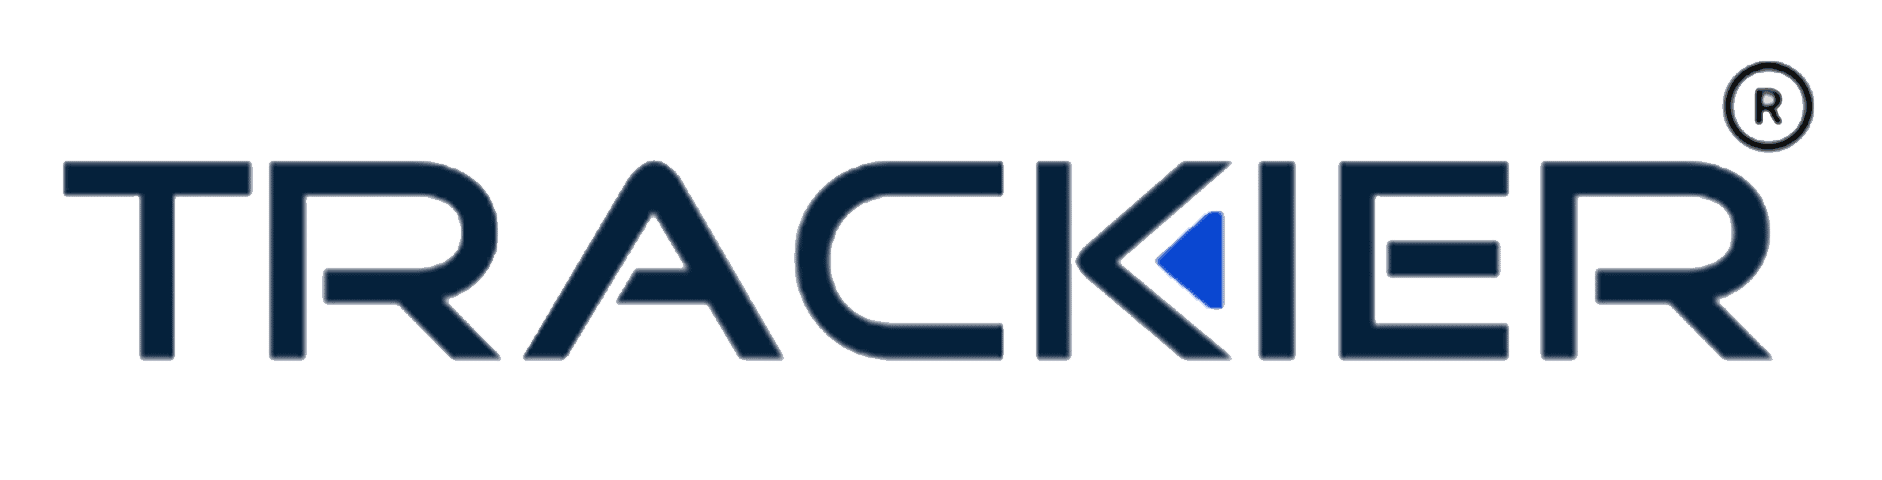 Trackier logo